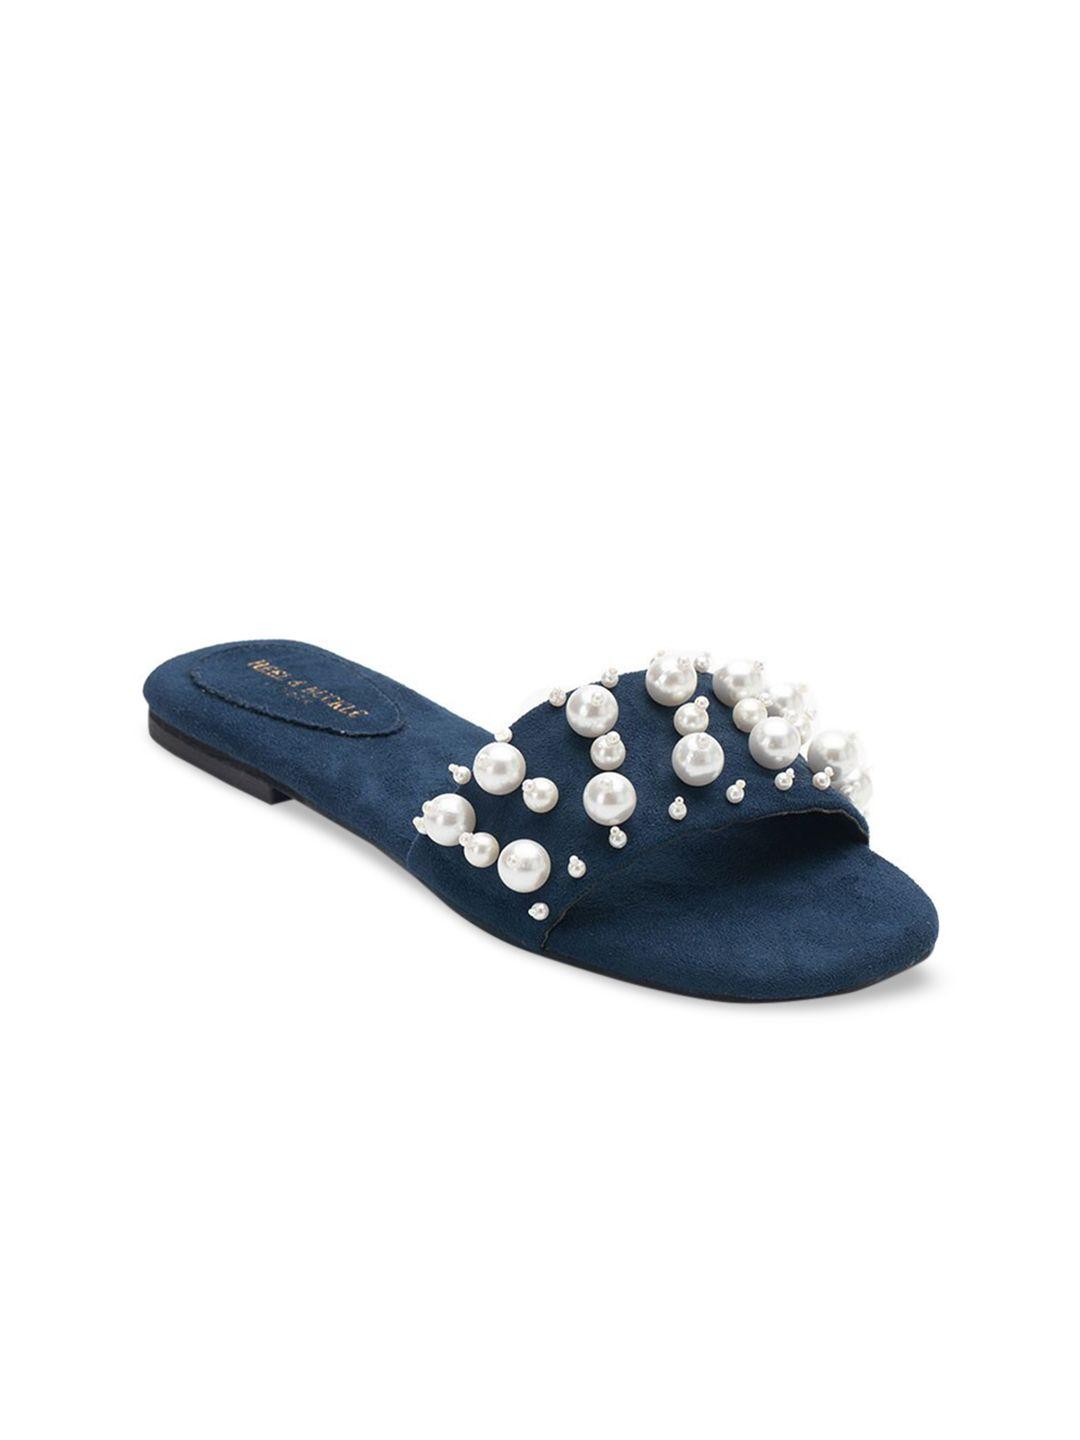 heel & buckle london women blue pearl studded open toe flats